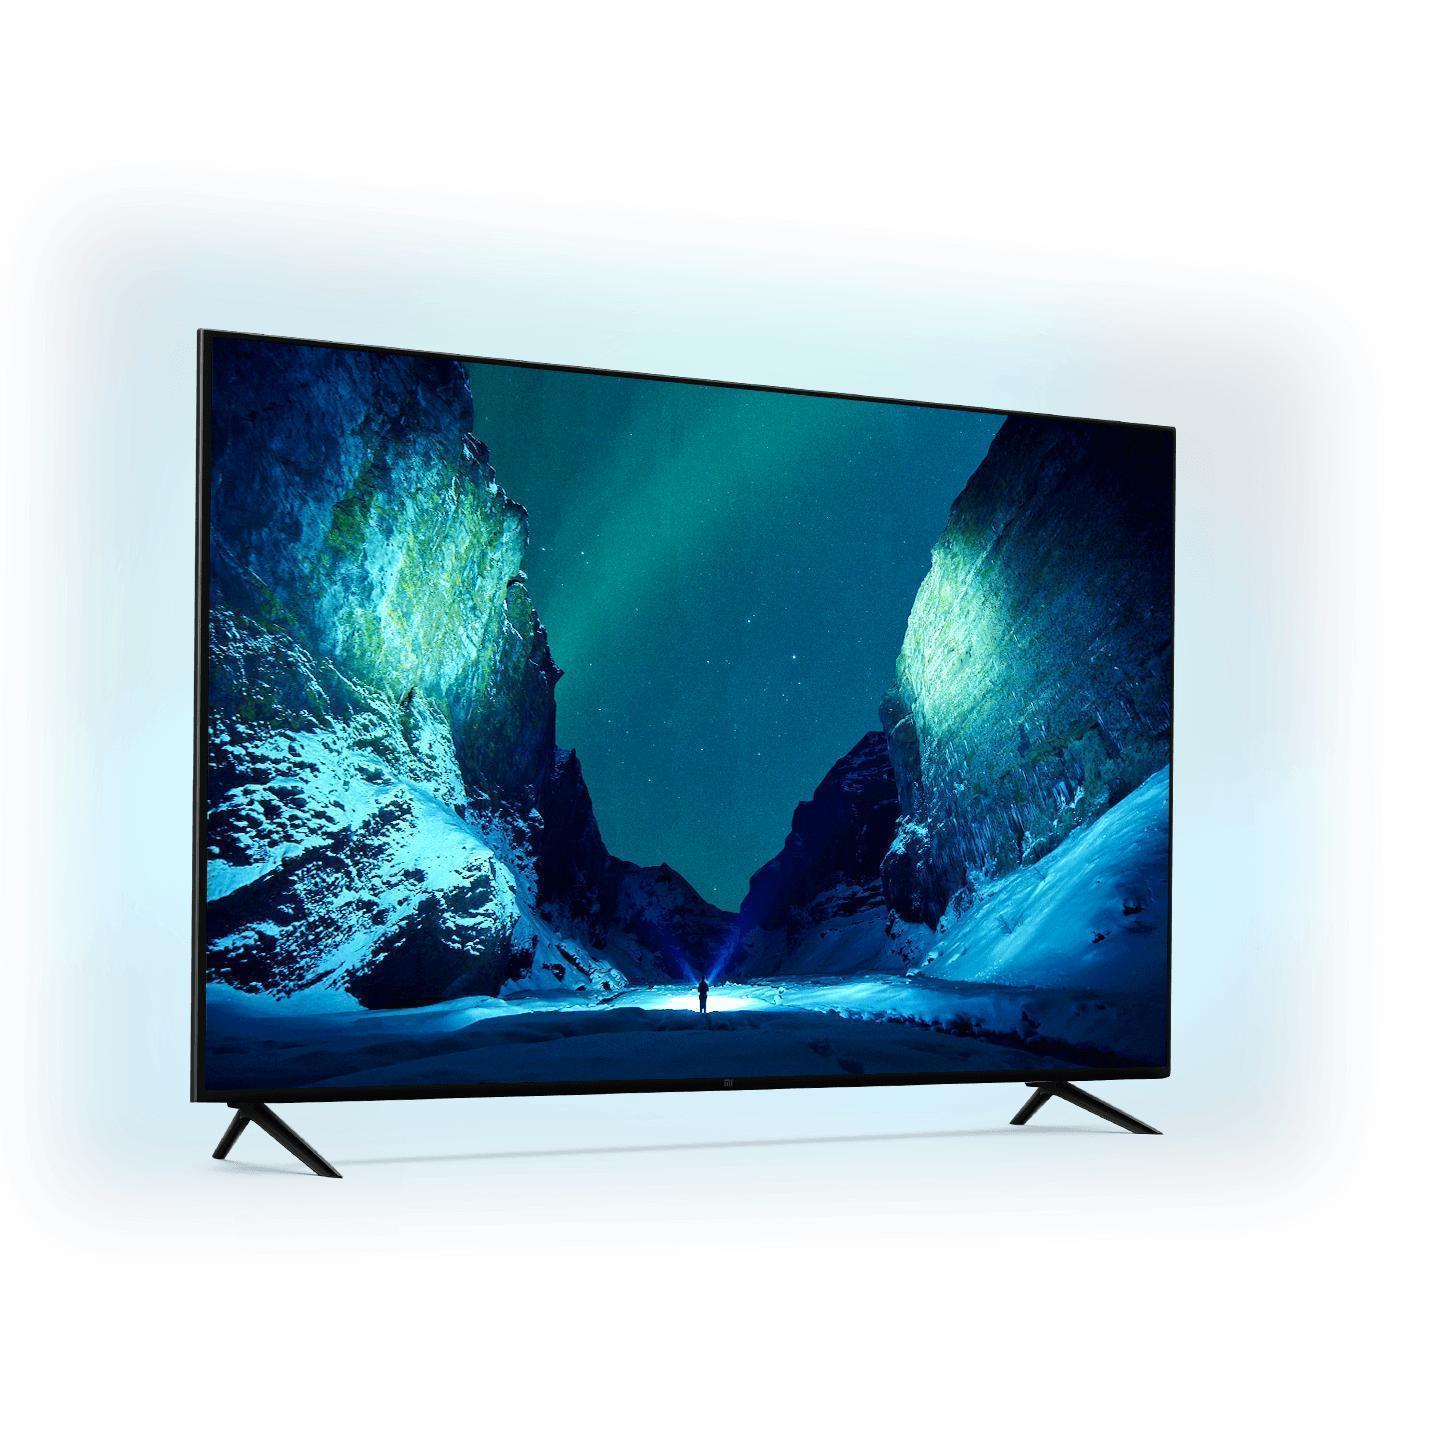 Телевизор xiaomi купить в спб. Телевизор Xiaomi mi TV 4s 50. Телевизор Xiaomi 43 дюйма. Телевизор Xiaomi l50m5-5aru.